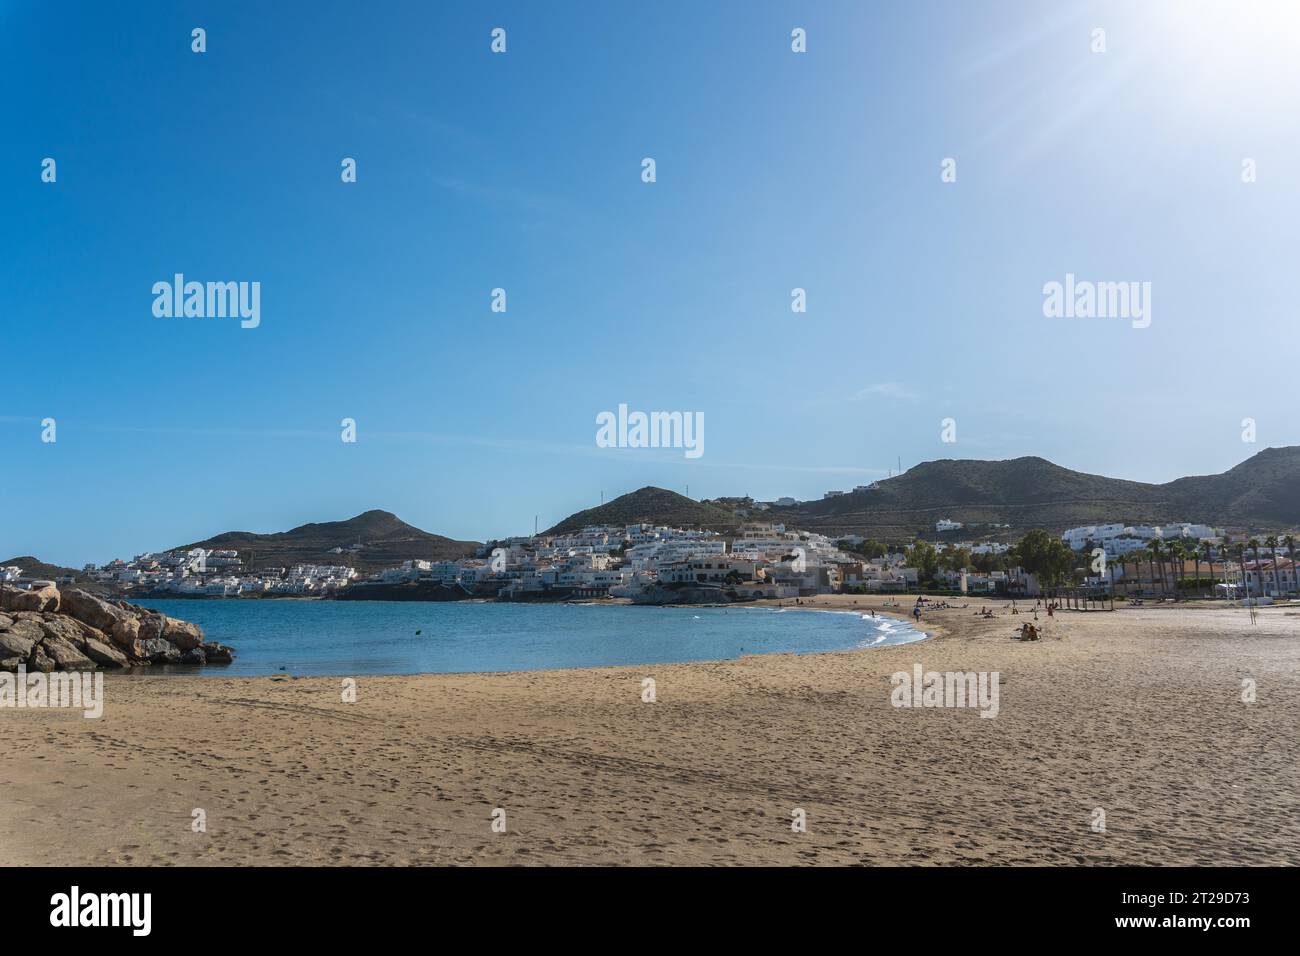 Belle plage de San Jose dans la ville de Nijar, Almeria. Côte andalouse à Cabo de Gata. Espagne Banque D'Images